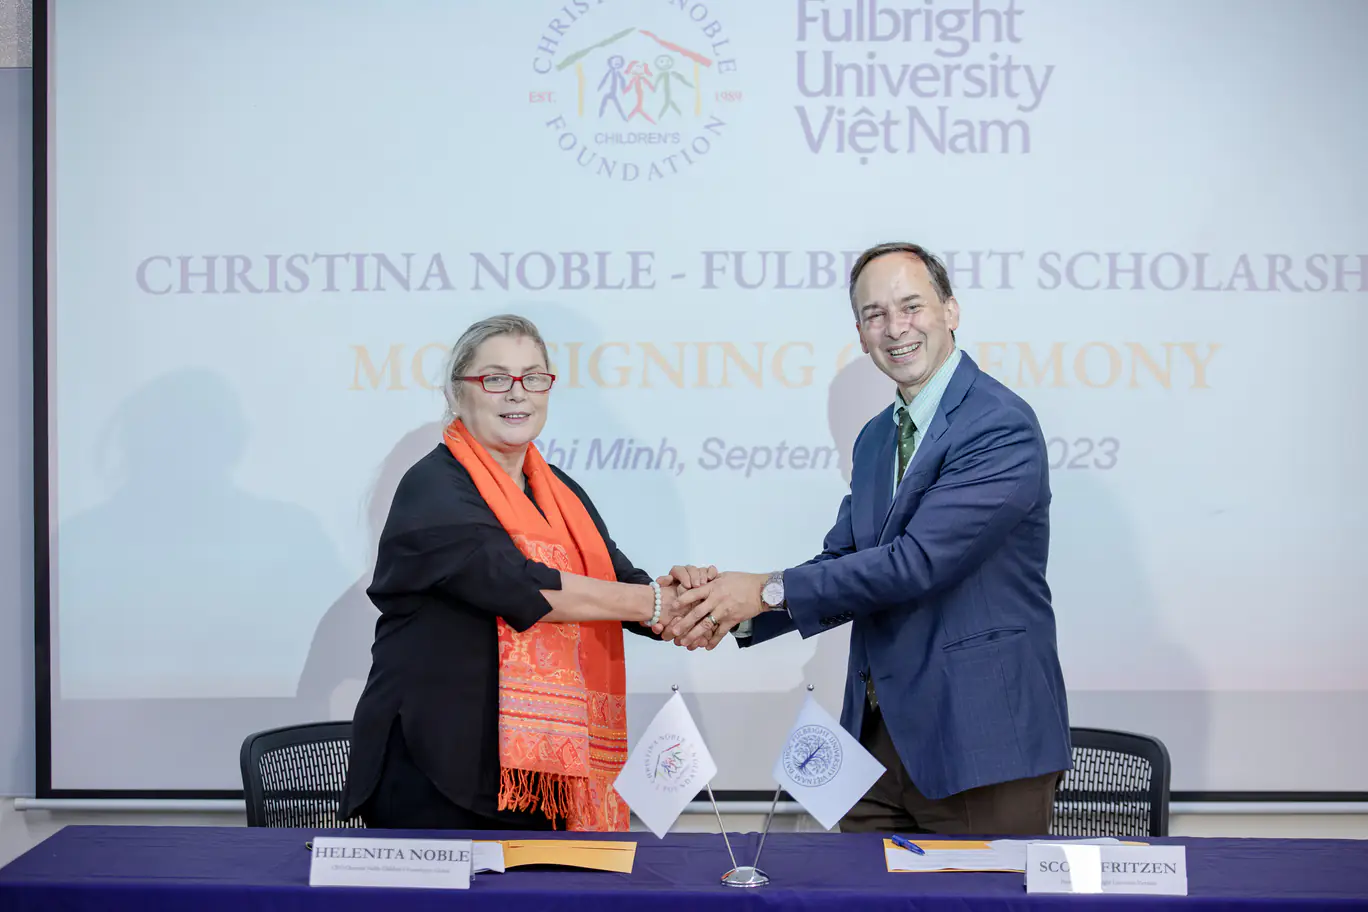 Trường Đại học Fulbright Việt Nam cung cấp học bổng cho sinh viên